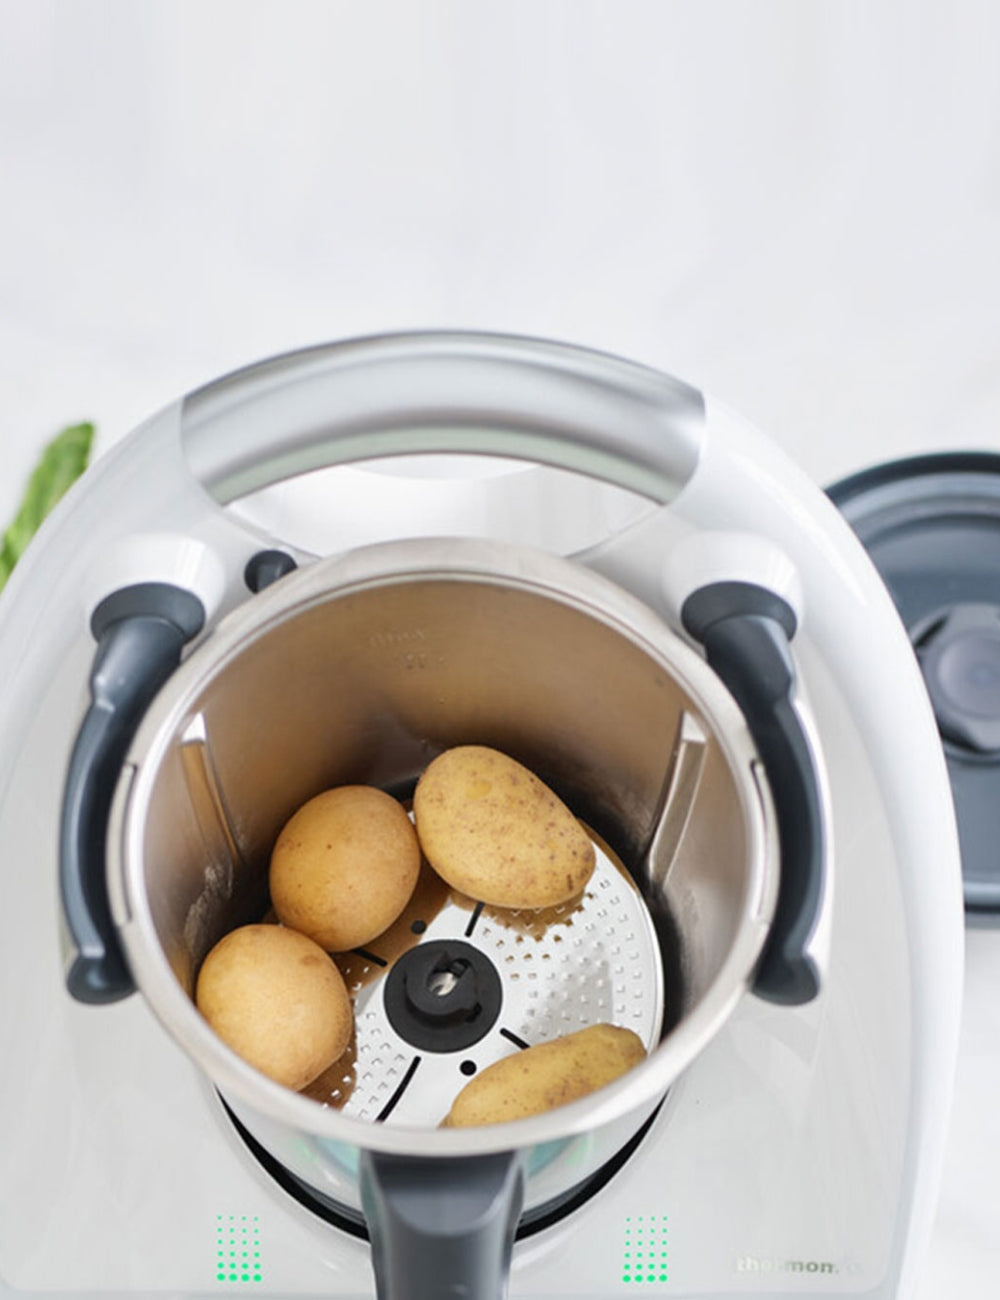  Vorwerk Thermomix TM5000 2.0 Liters Food Blender, White:  Electronics: Home & Kitchen